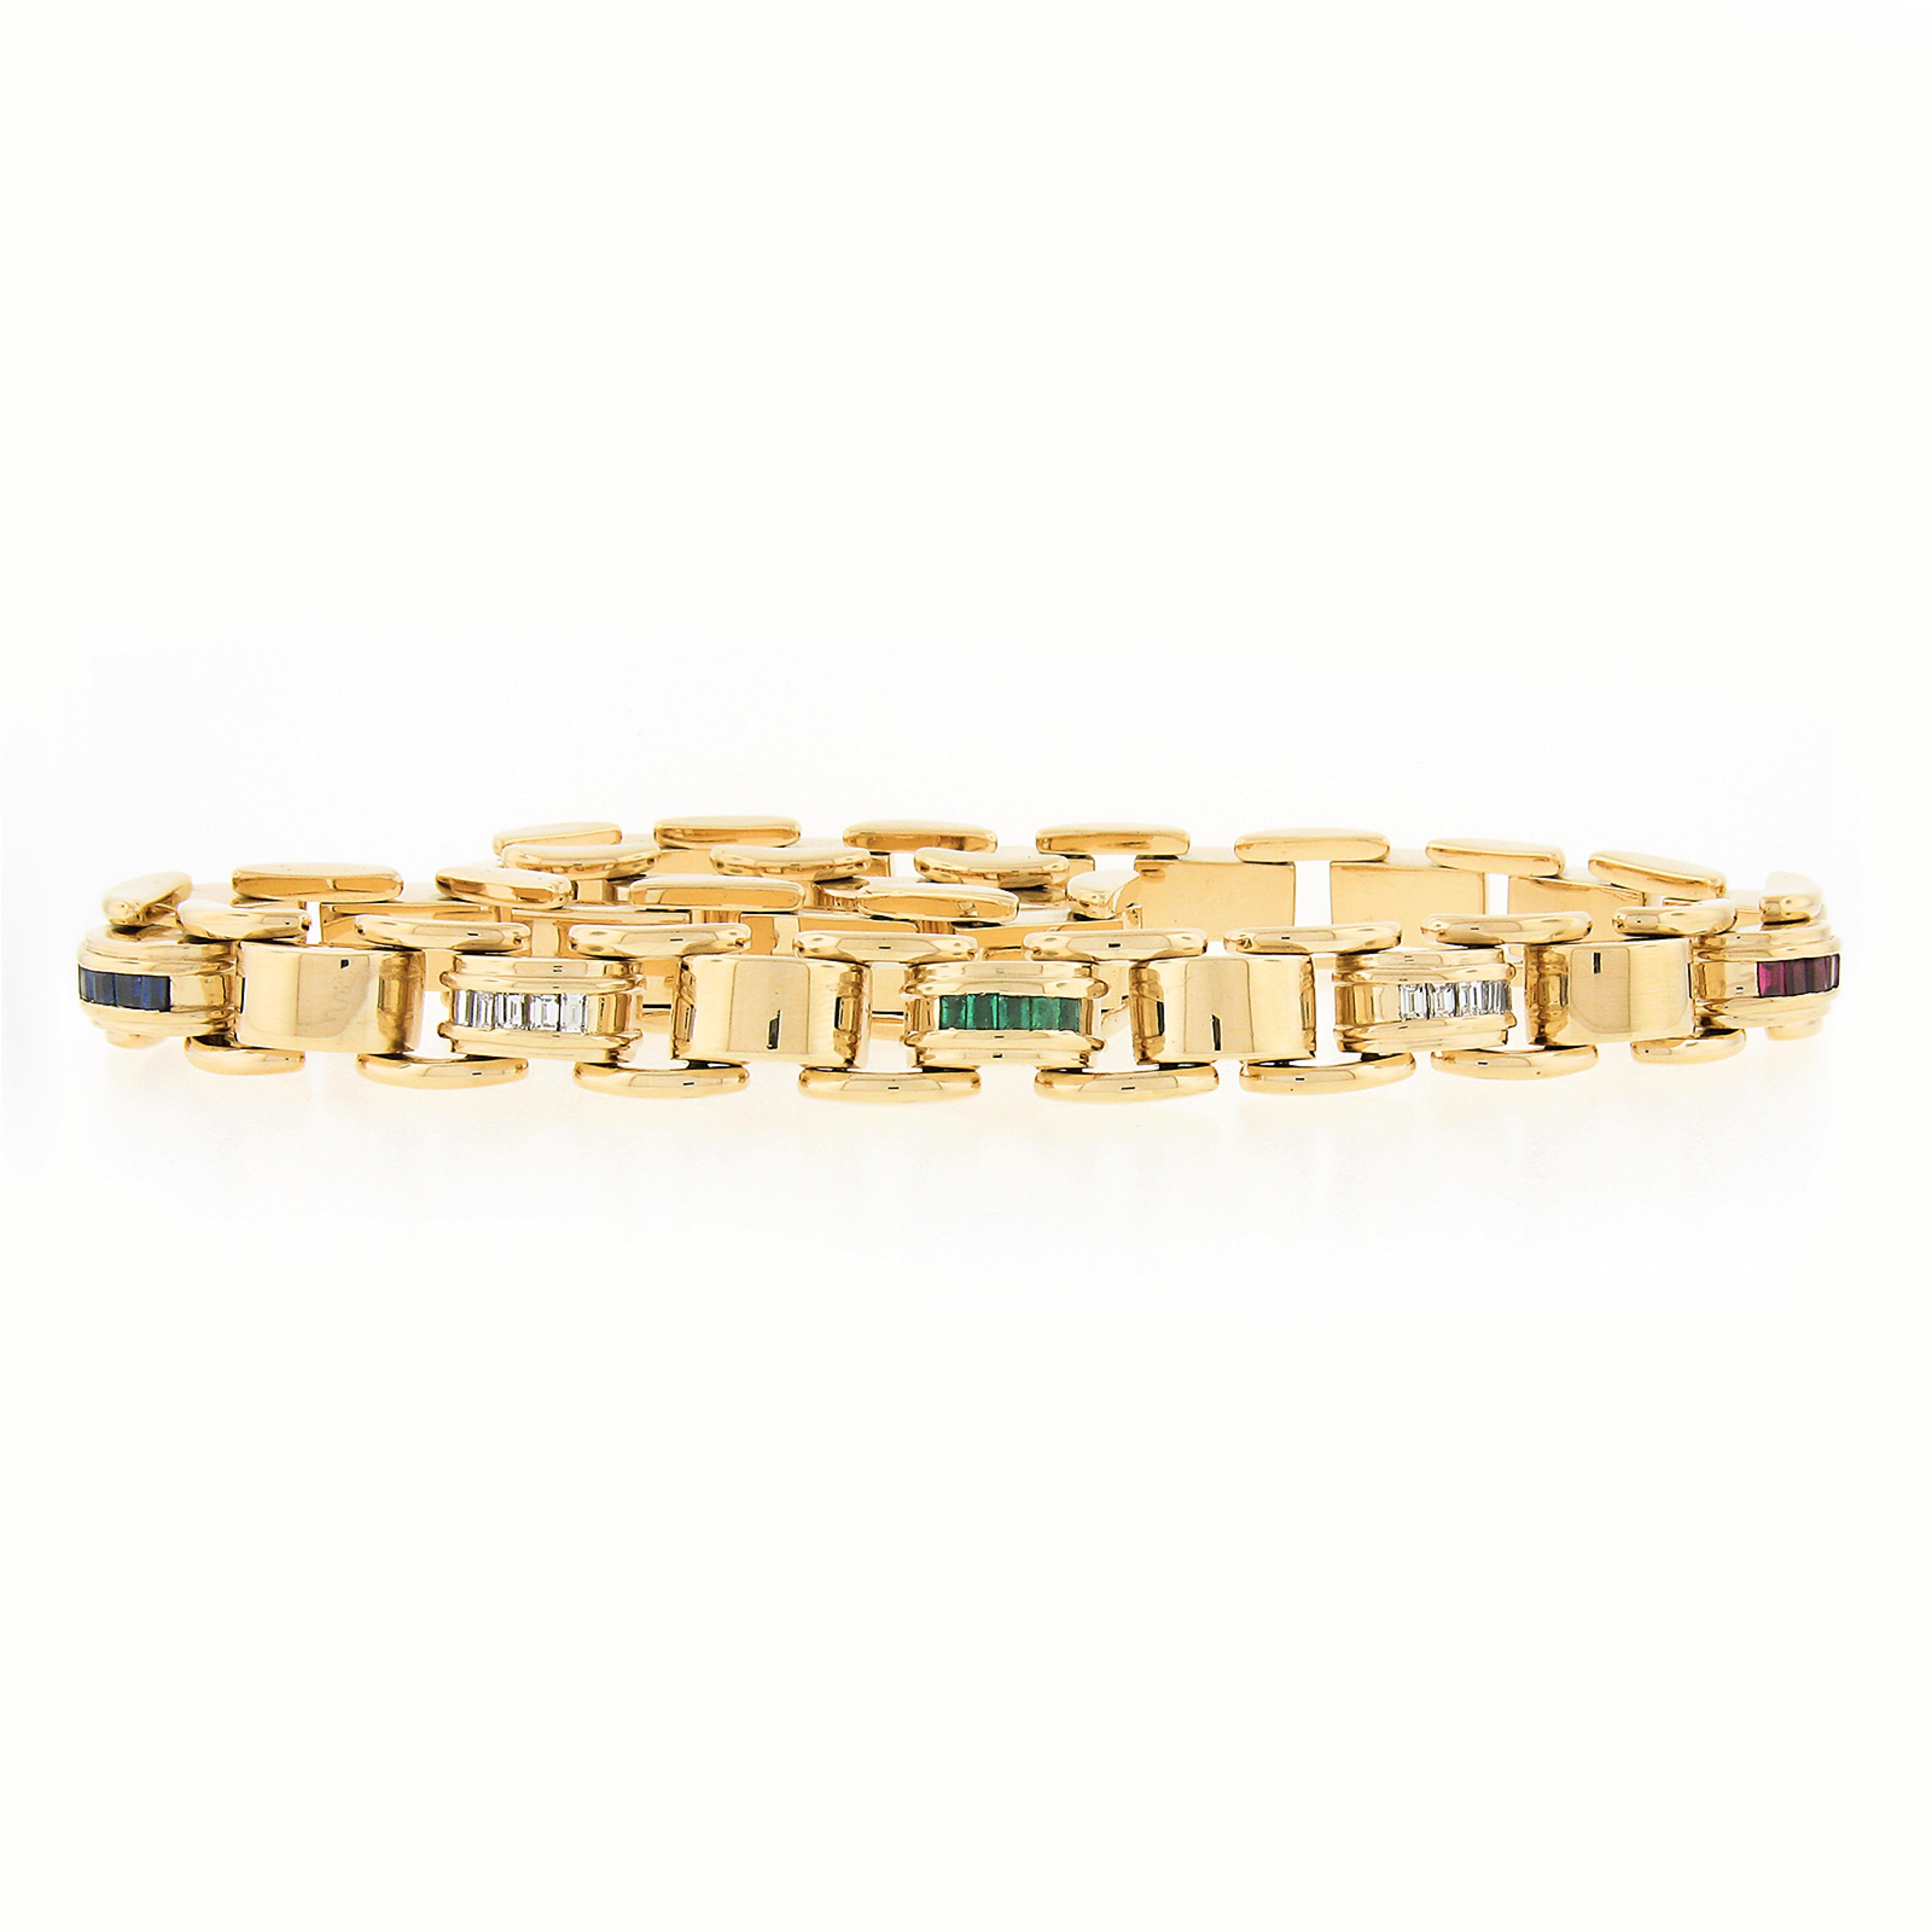 Dieses wunderschöne Set aus Halskette und Armband von Tiffany & Co. ist aus massivem 18-karätigem Gelbgold gefertigt. Dieses solide und sehr gut verarbeitete Set verfügt über ausgefallene, gewölbte Glieder mit einer wunderbaren, hochglanzpolierten